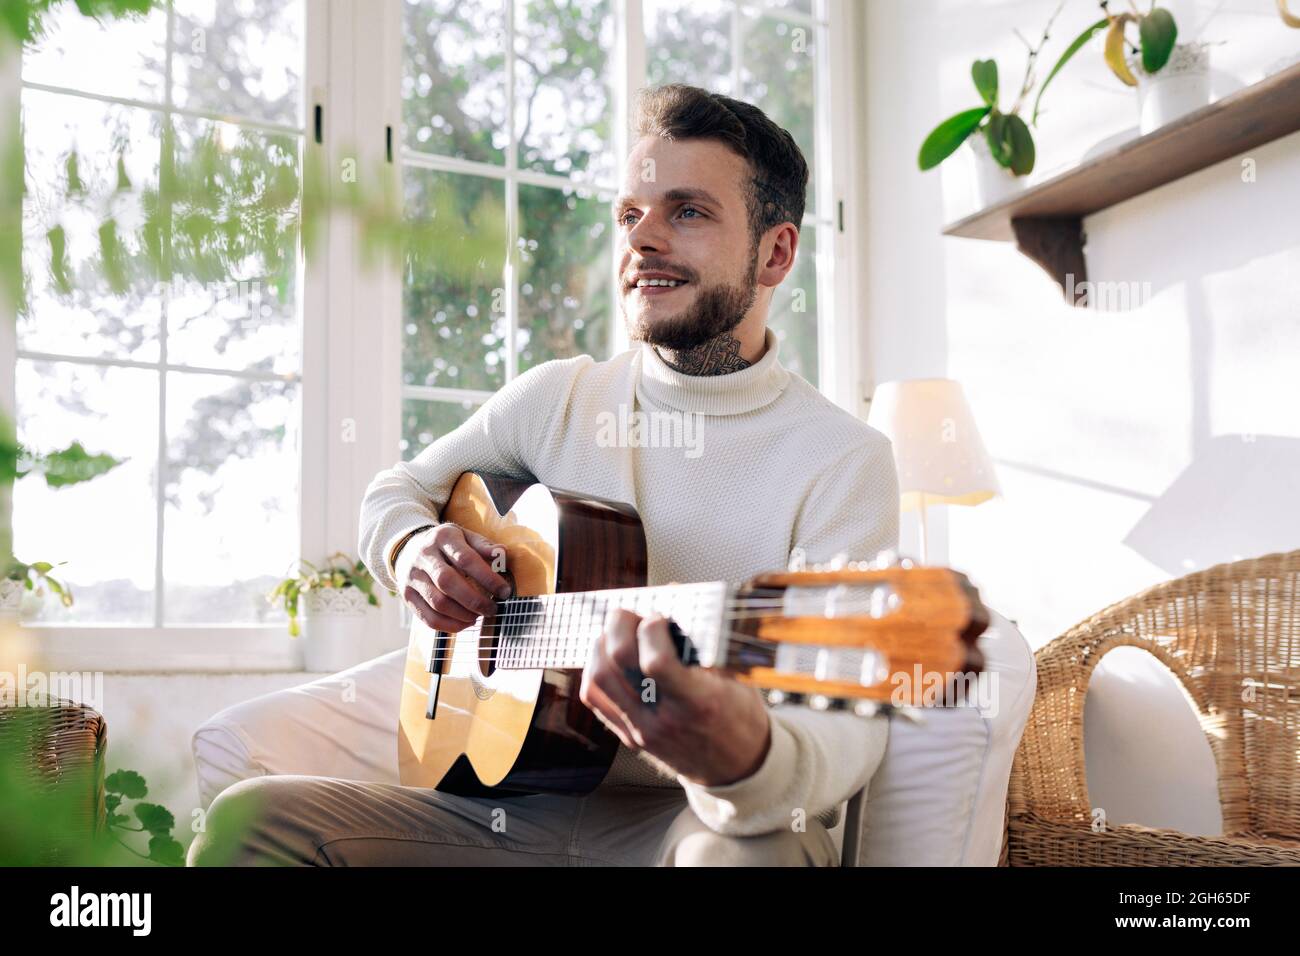 Musicista maschile contemplativo con tatuaggi che suonano chitarra classica  mentre si siede in poltrona e si guarda lontano contro la finestra in casa  Foto stock - Alamy